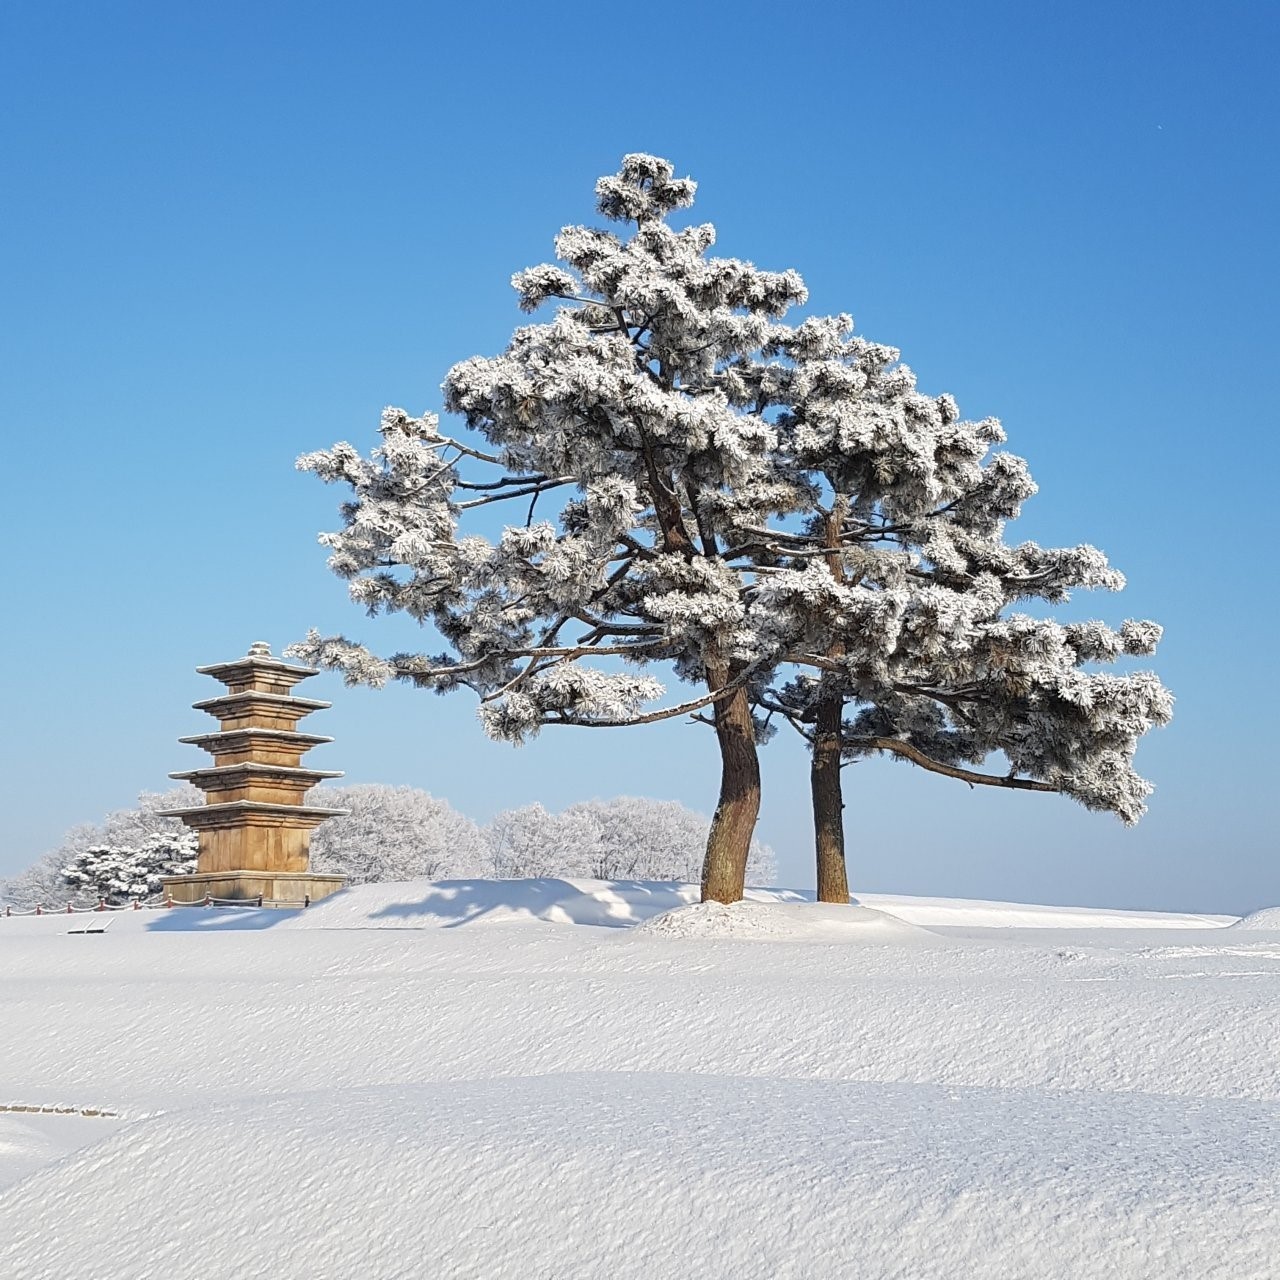 김종철, 왕궁리오층석탑의 겨울 풍경